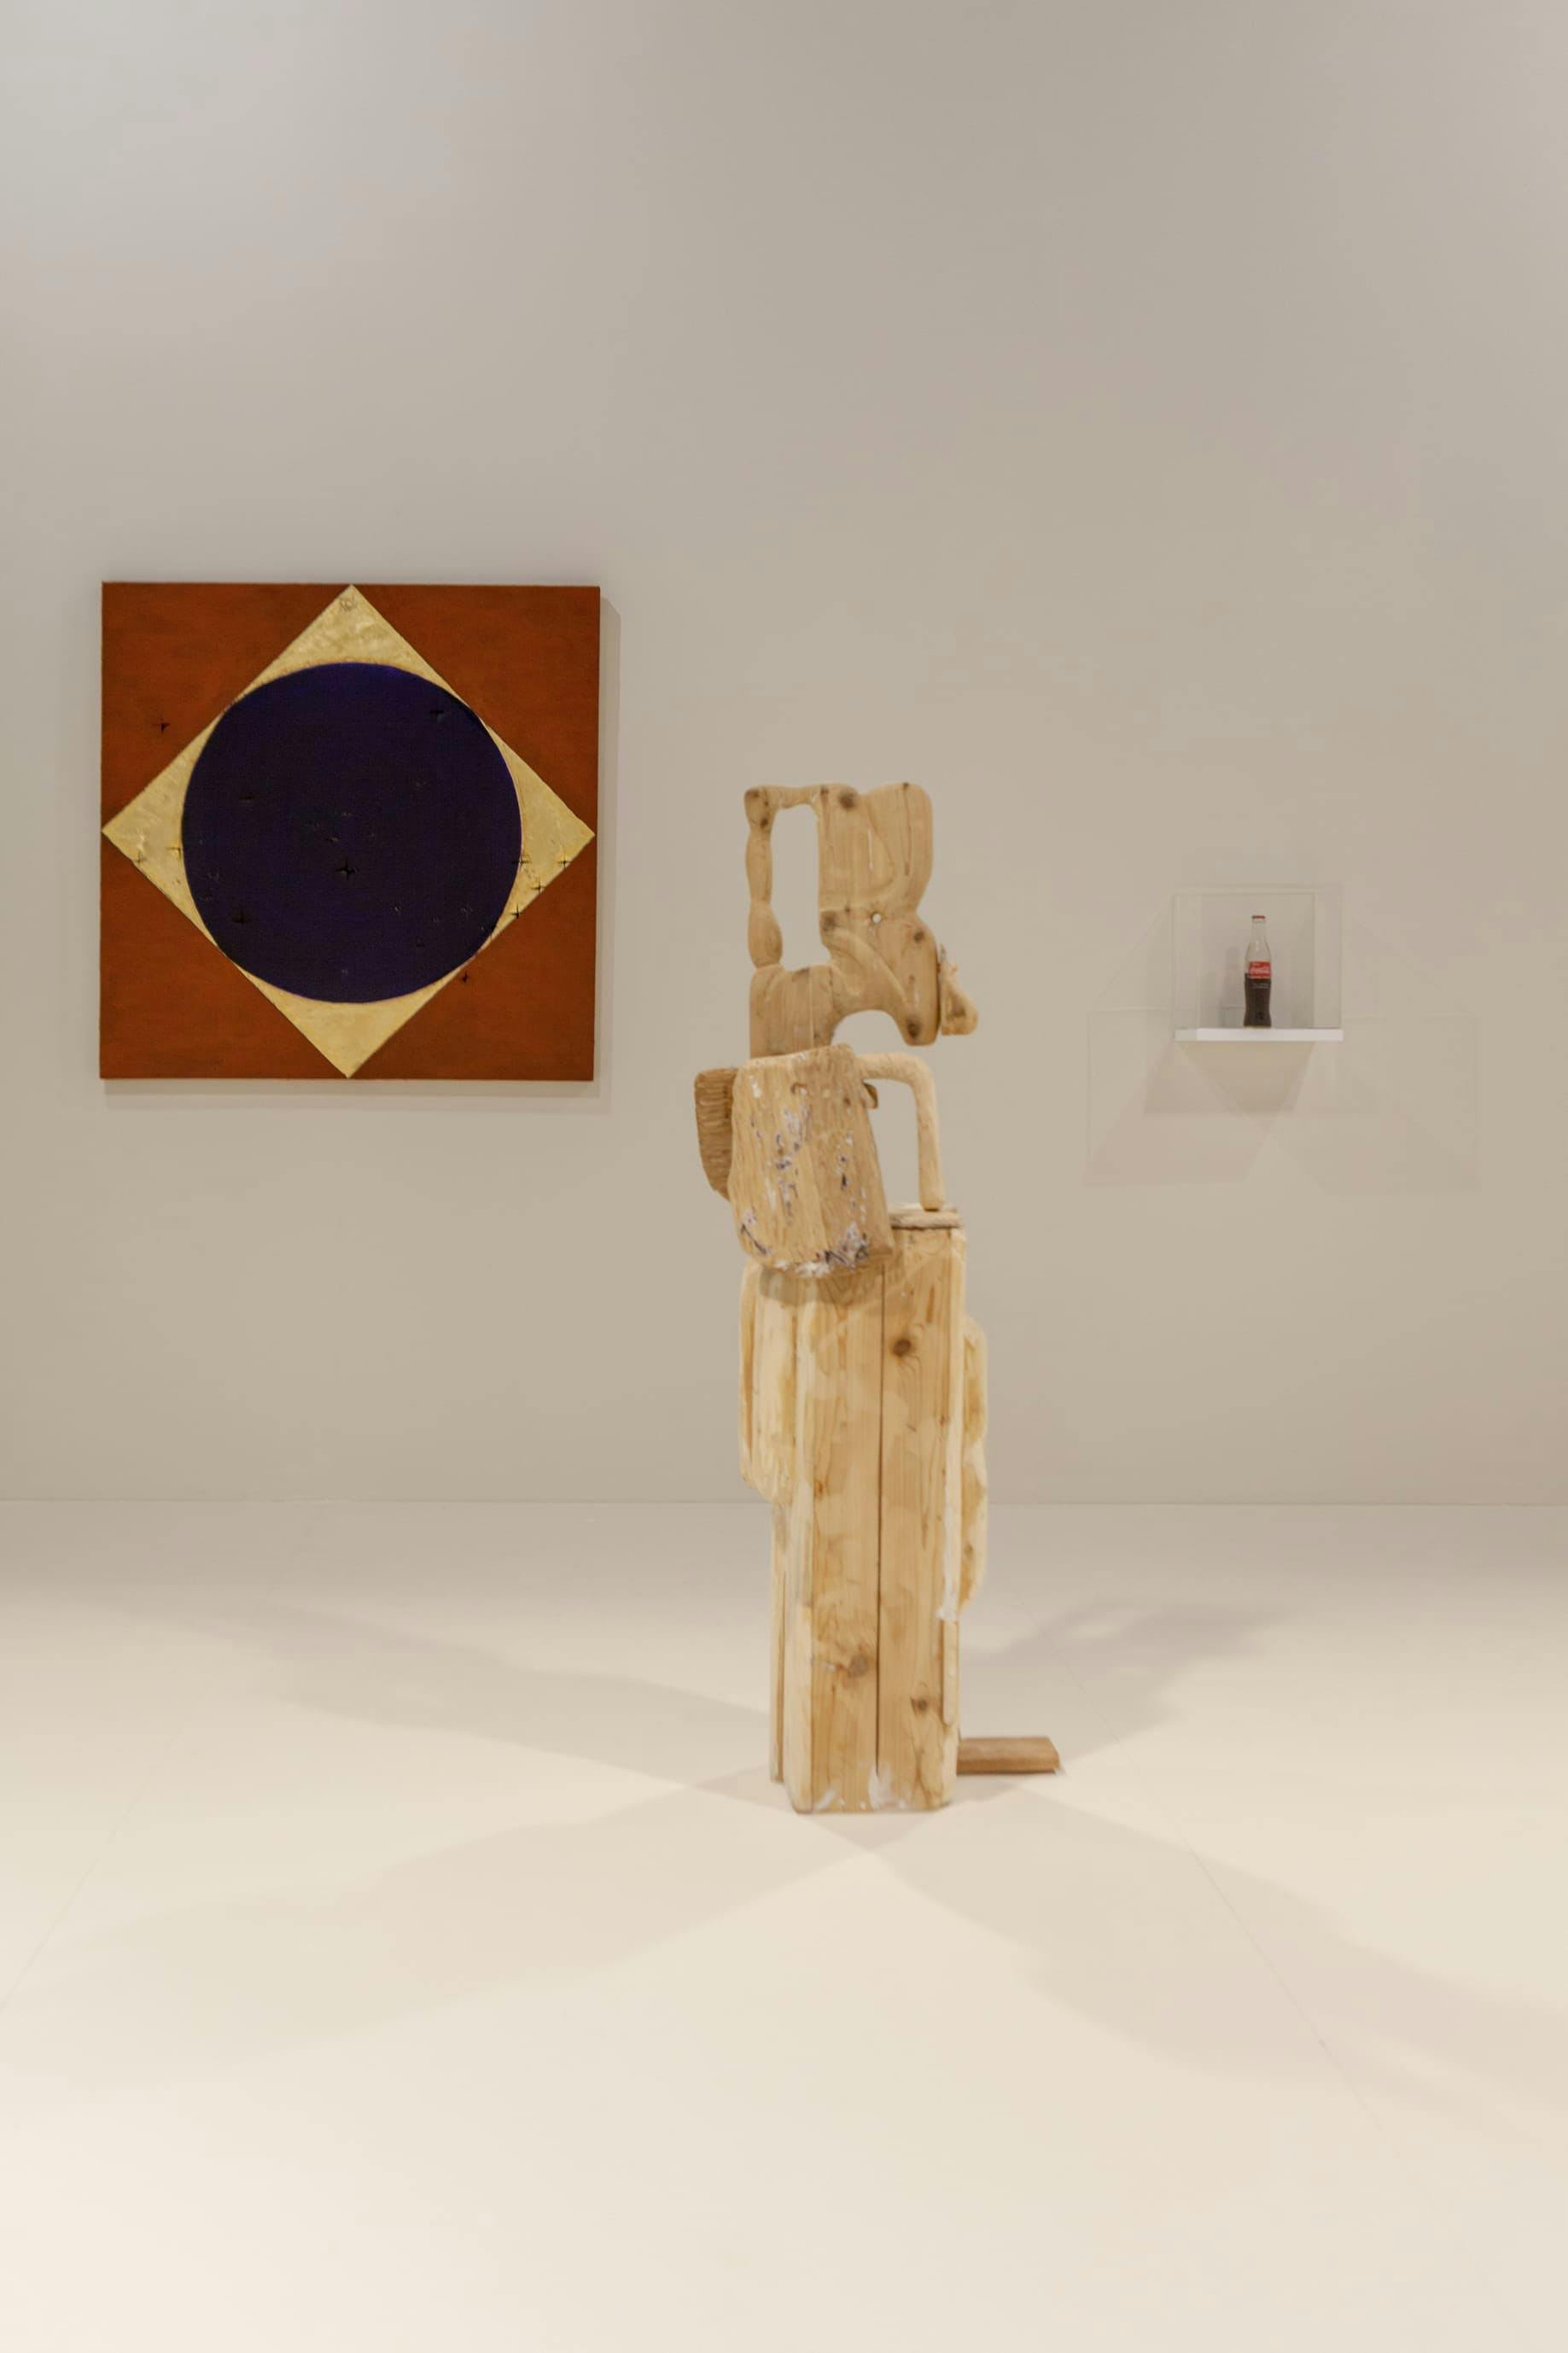 Galerias brasileiras apresentam arte contemporânea em Portugal